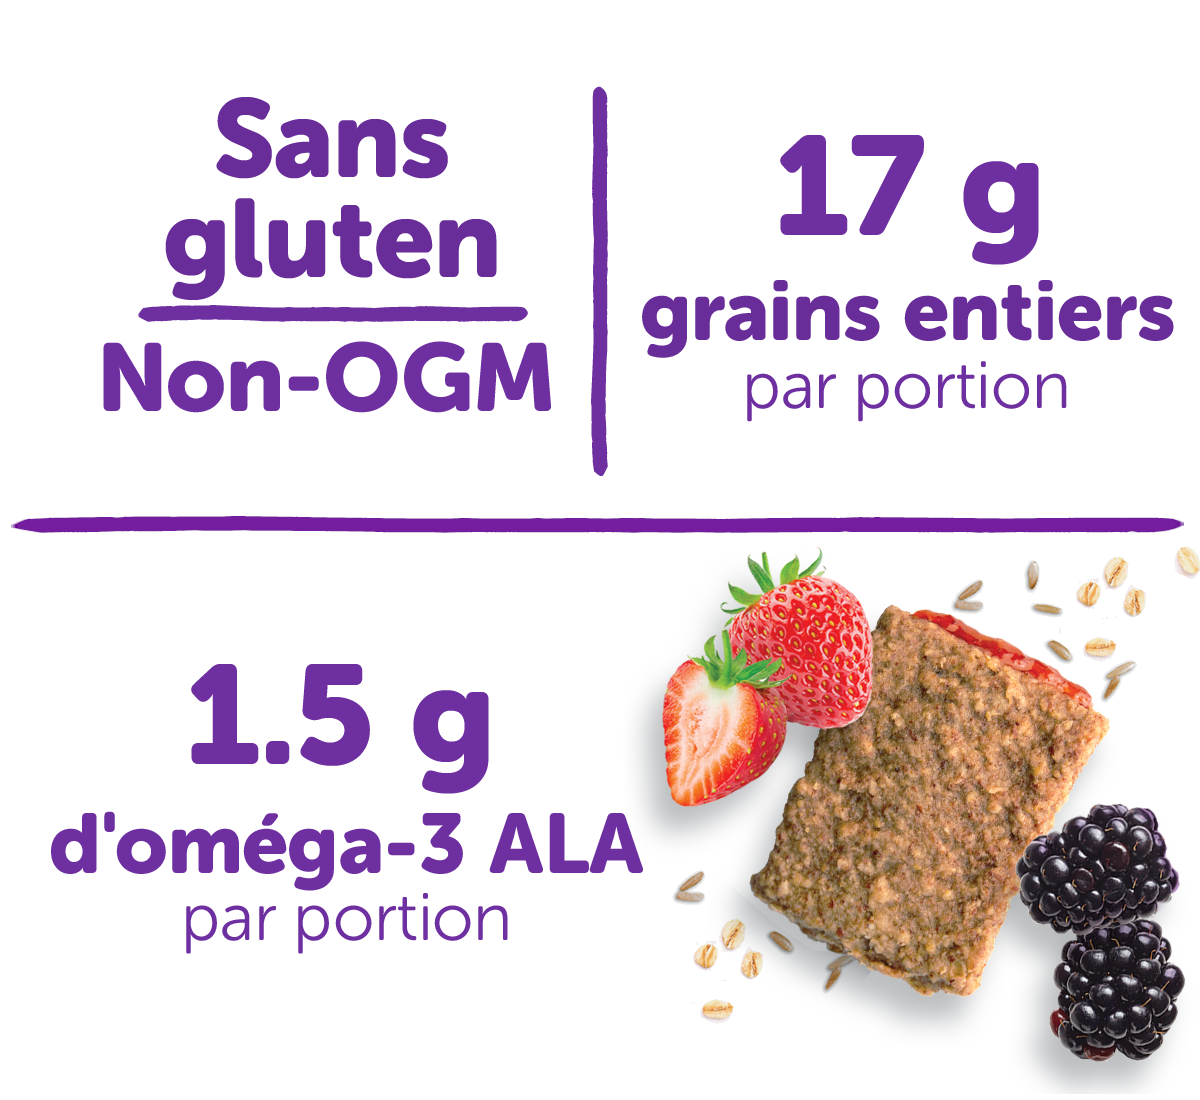 Sans gluten, non-OGM, 17 g de grains entiers par portion, 1.5 g d'omega-3 ALA par portion